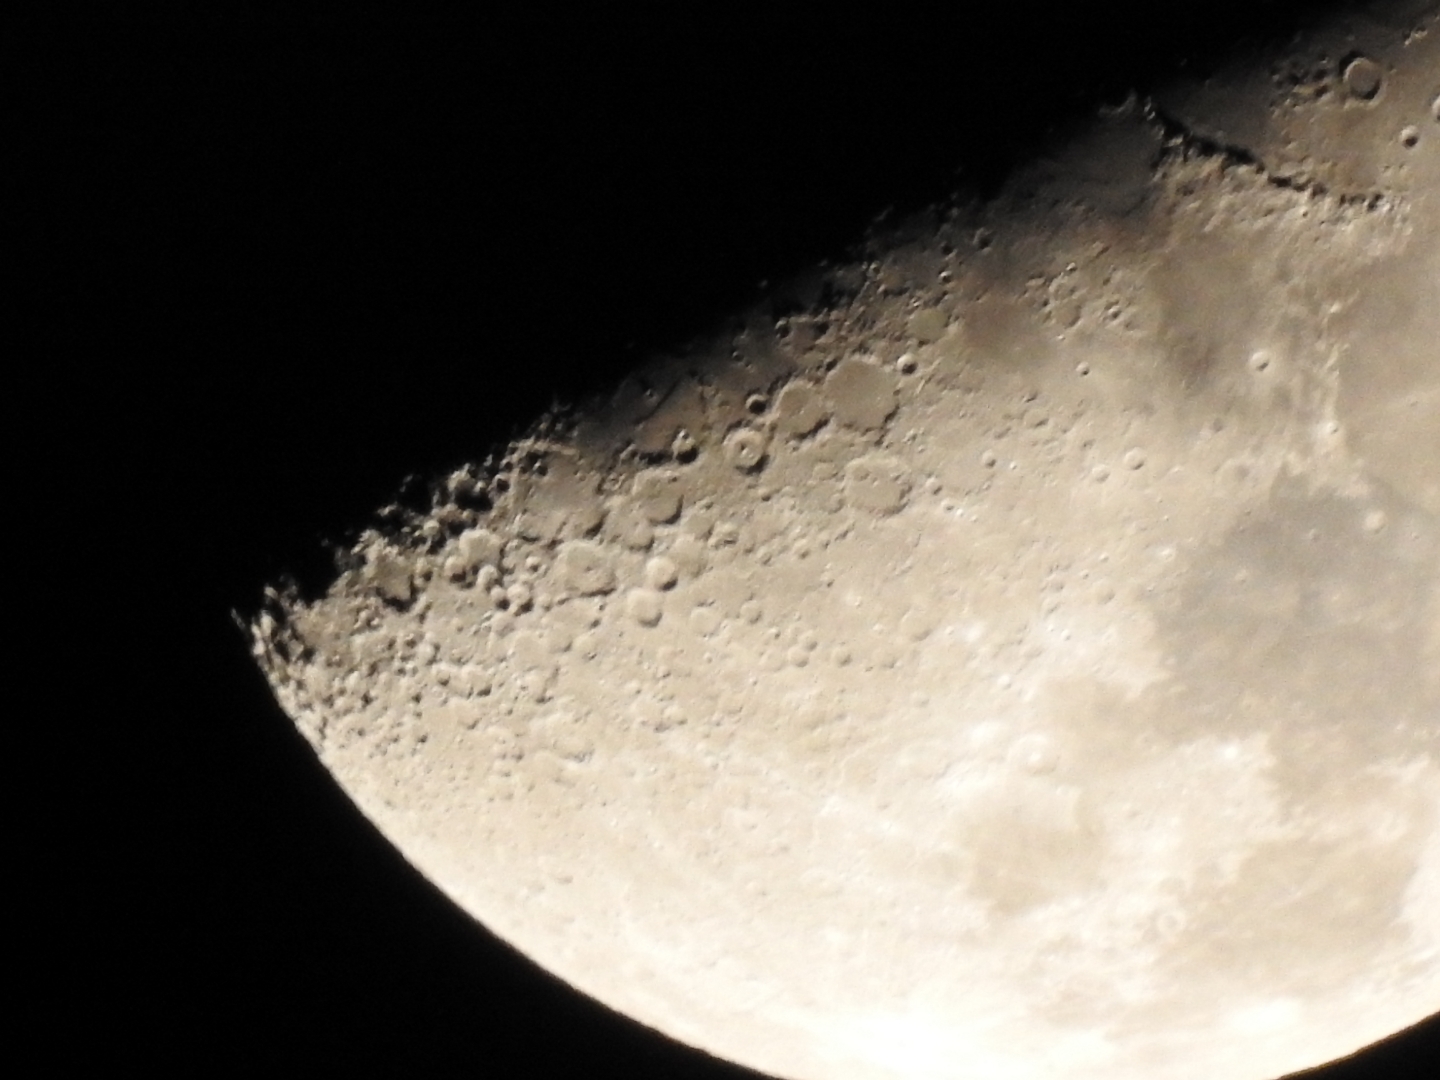 农历二十的月亮图片图片